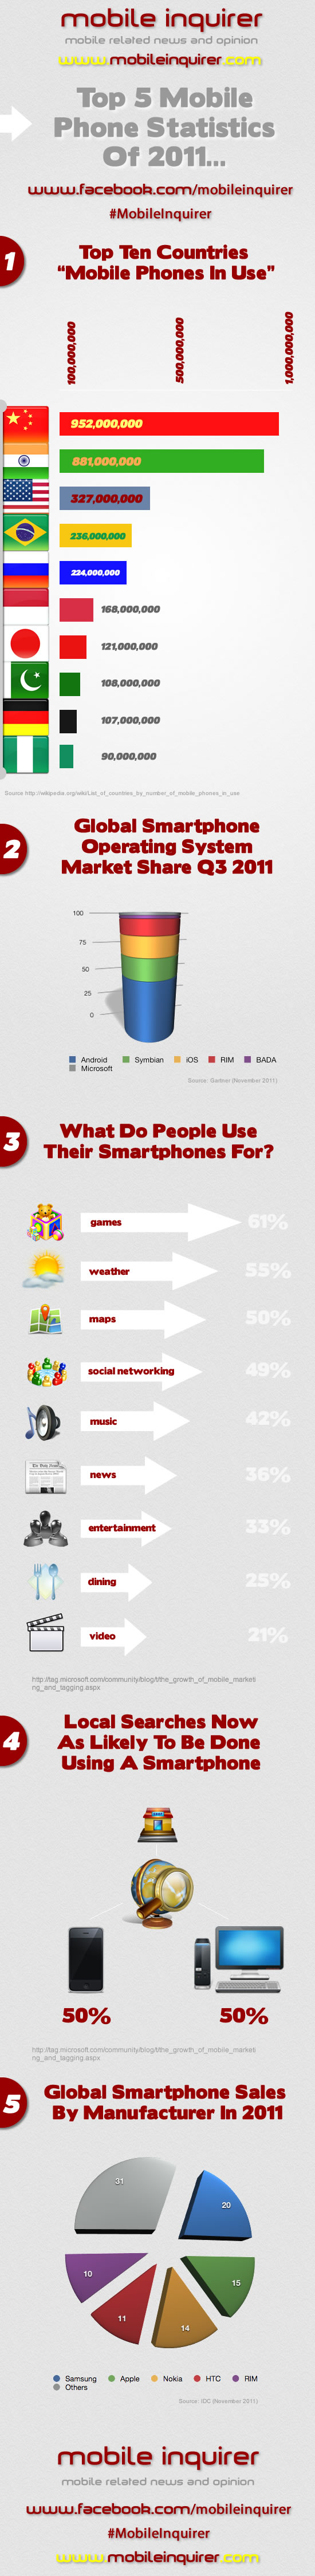 Top 5 Mobile Phone Statistics 2011